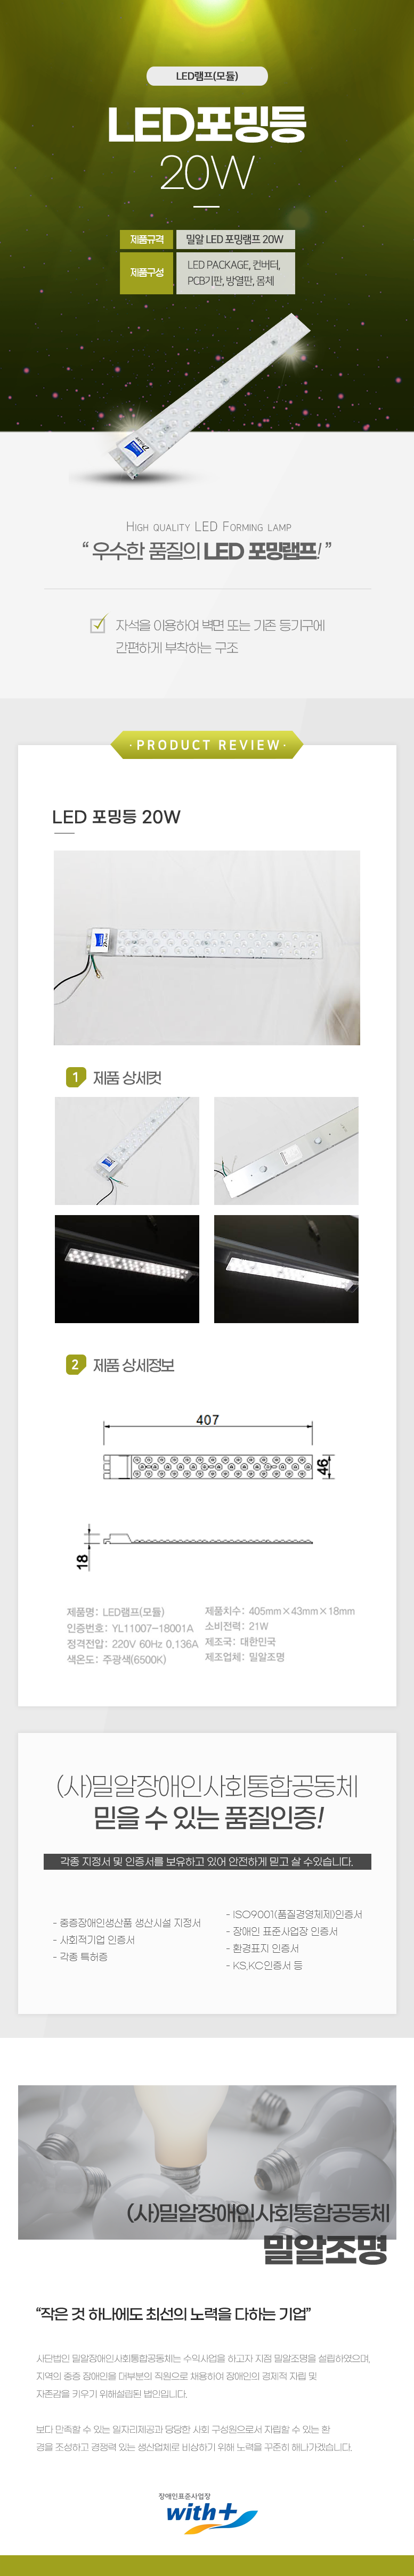 LED램프(모듈)
LED포밍등 20W

제품규격: 밀알 LED포밍램프 20W
제품구성: LED PACKAGE, 컨버터,PCB기판,방열판, 몸체

HIGH QUALITY LED FORMING LAMP
'우수한 품질의 LED 포밍램프!'

자석을 이용하여 벽면 또는 기존 등기구에 간편하게 부착하는 구조

PRODUCT REVIEW
LED 포밍등 20W

1 제품상세컷
2 제품상세정보
가로:407mm,세로: 46mm

제품명: LED램프(모듈)
제품치수: 405mm×43mmX18mm
인증번호: YL11007-18001A 
소비전력: 21W
정격전압: 220V 60Hz 0.136A 
제조국: 대한민국 
색온도: 주광색(6500K)
제조업체: 밀알조명

(사)밀알장애인사회통합공동체 
믿을 수 있는 품질인증!
각종 지정서 및 인증서를 보유하고 있어 안전하게 믿고 살 수있습니다.
- ISO9001(품질경영체제)인증서
- 중증장애인생산품 생산시설 지정서
- 장애인 표준사업장 인증서
- 사회적기업 인증서
- 각종 특허증
- 환경표지 인증서
- KS,KC인증서 등

(사)밀알장애인사회통합공동체 밀알조명
작은 것 하나에도 최선의 노력을 다하는 기업
사단법인 밀알장애인사회통합공동체는 수익사업을 하고자 지점 밀알조명을 설립하였으며,
지역의 중증장애인을 대부분의 직원으로 채용하여 장애인의 경제적 자립 및
자존감을 키우기 위해설립된 법인입니다.
보다 만족할 수 있는 일자리제공과 당당한 사회 구성원으로서 자립할 수 있는 환
경을 조성하고 경쟁력 있는 생산업체로 비상하기 위해 노력을 꾸준히 해나가겠습니다.

장애인표준사업장 with+